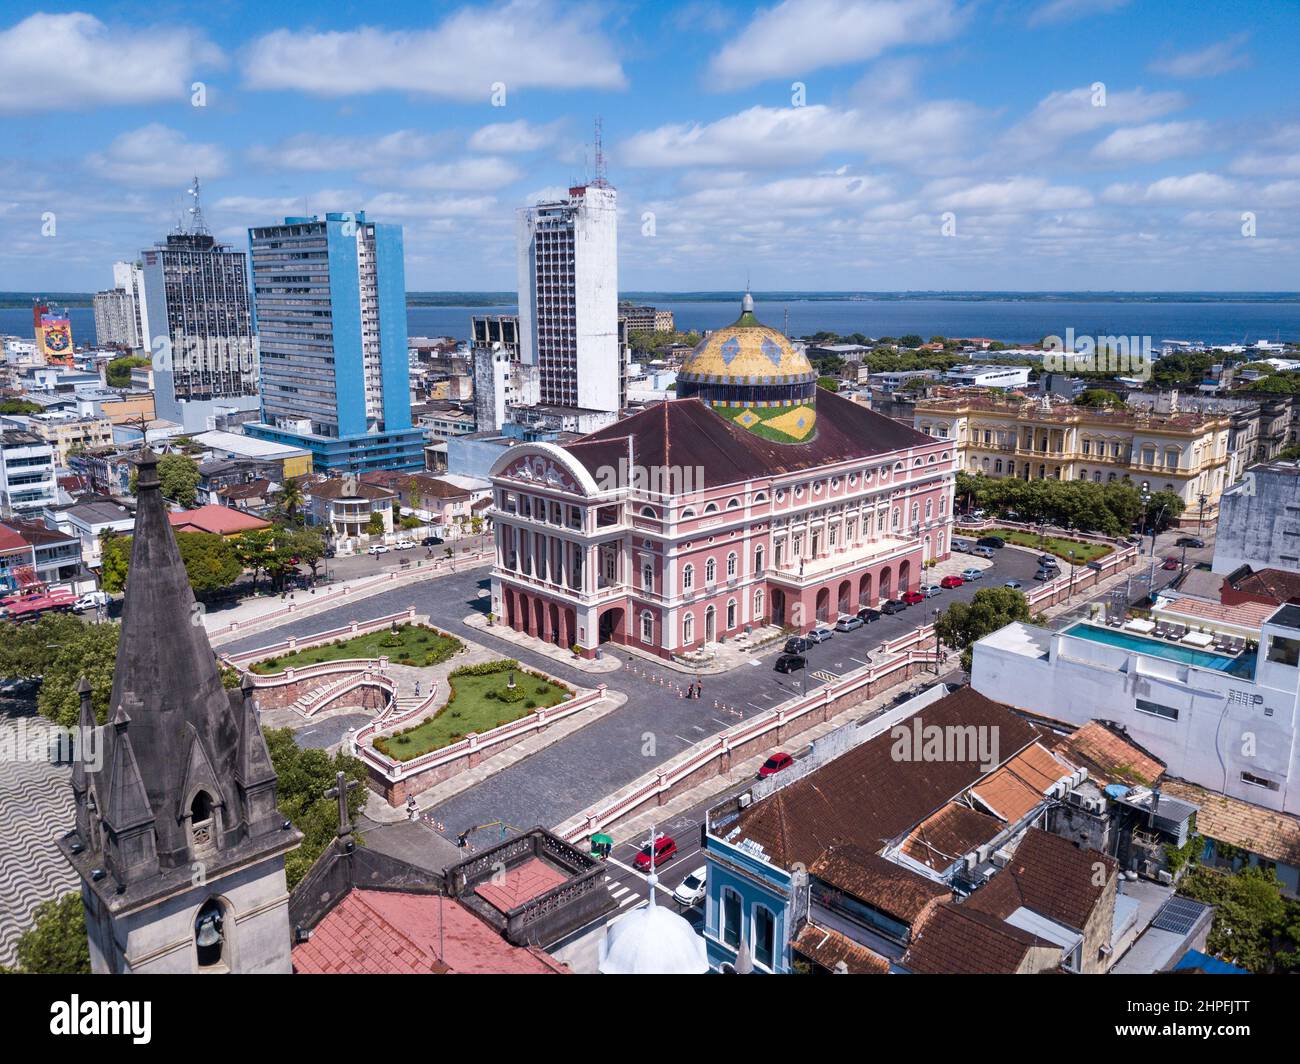 Magnifique vue aérienne de drone sur le théâtre emblématique d'Amazonas et les maisons du centre-ville, les bâtiments et les rues en été ensoleillé dans la forêt tropicale d'Amazone. Brésil Banque D'Images